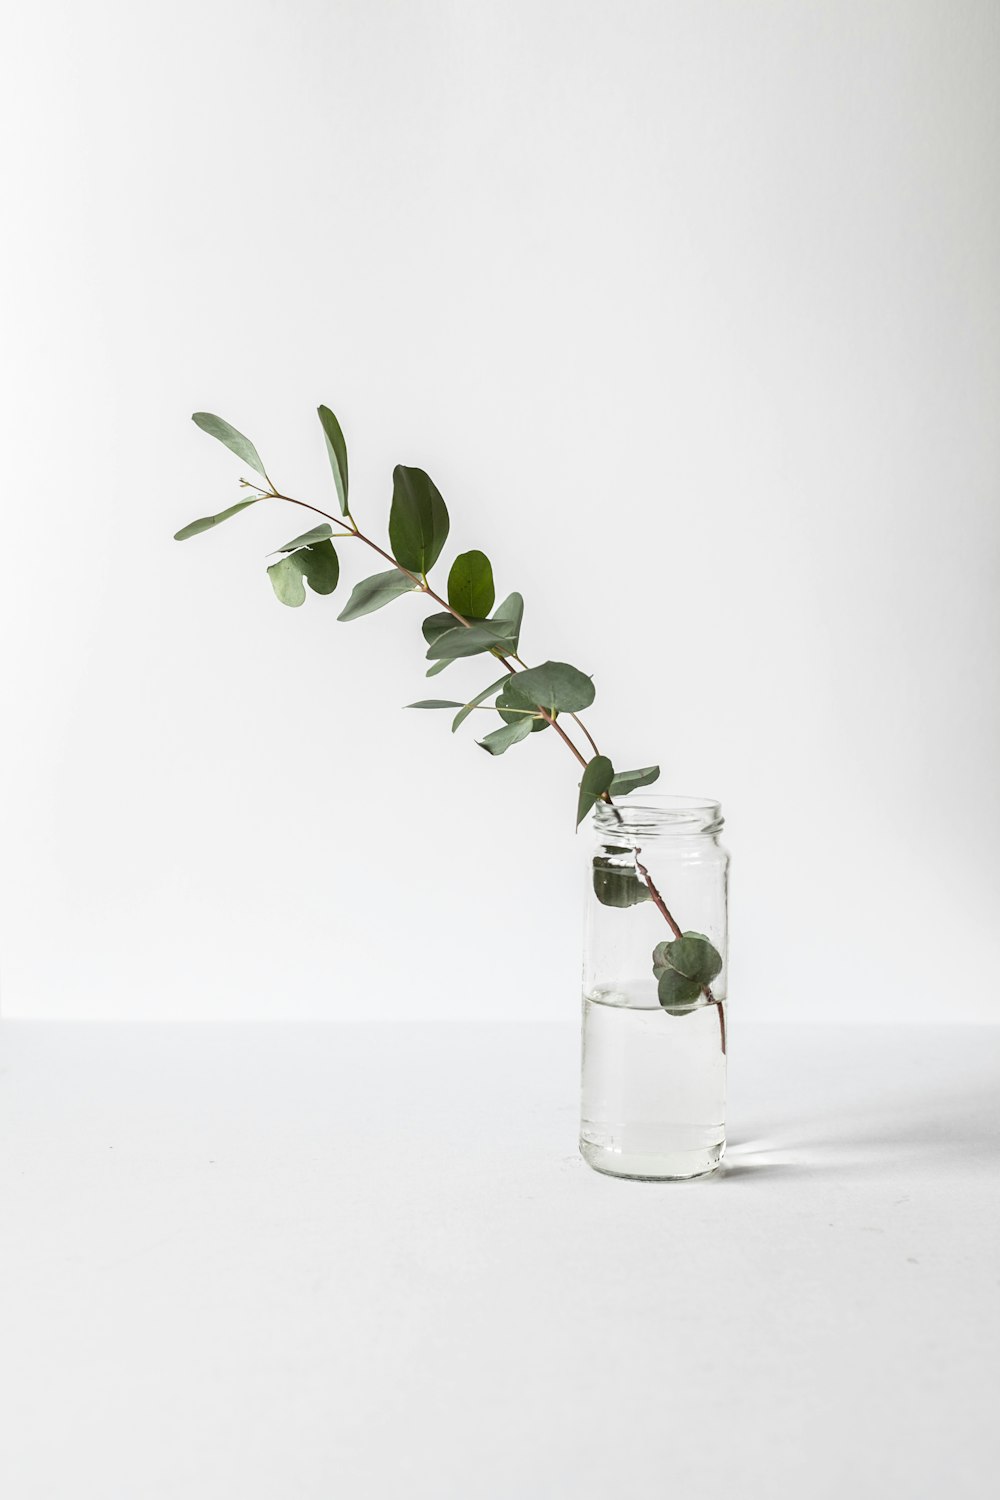 planta de folhas verdes no frasco de vidro